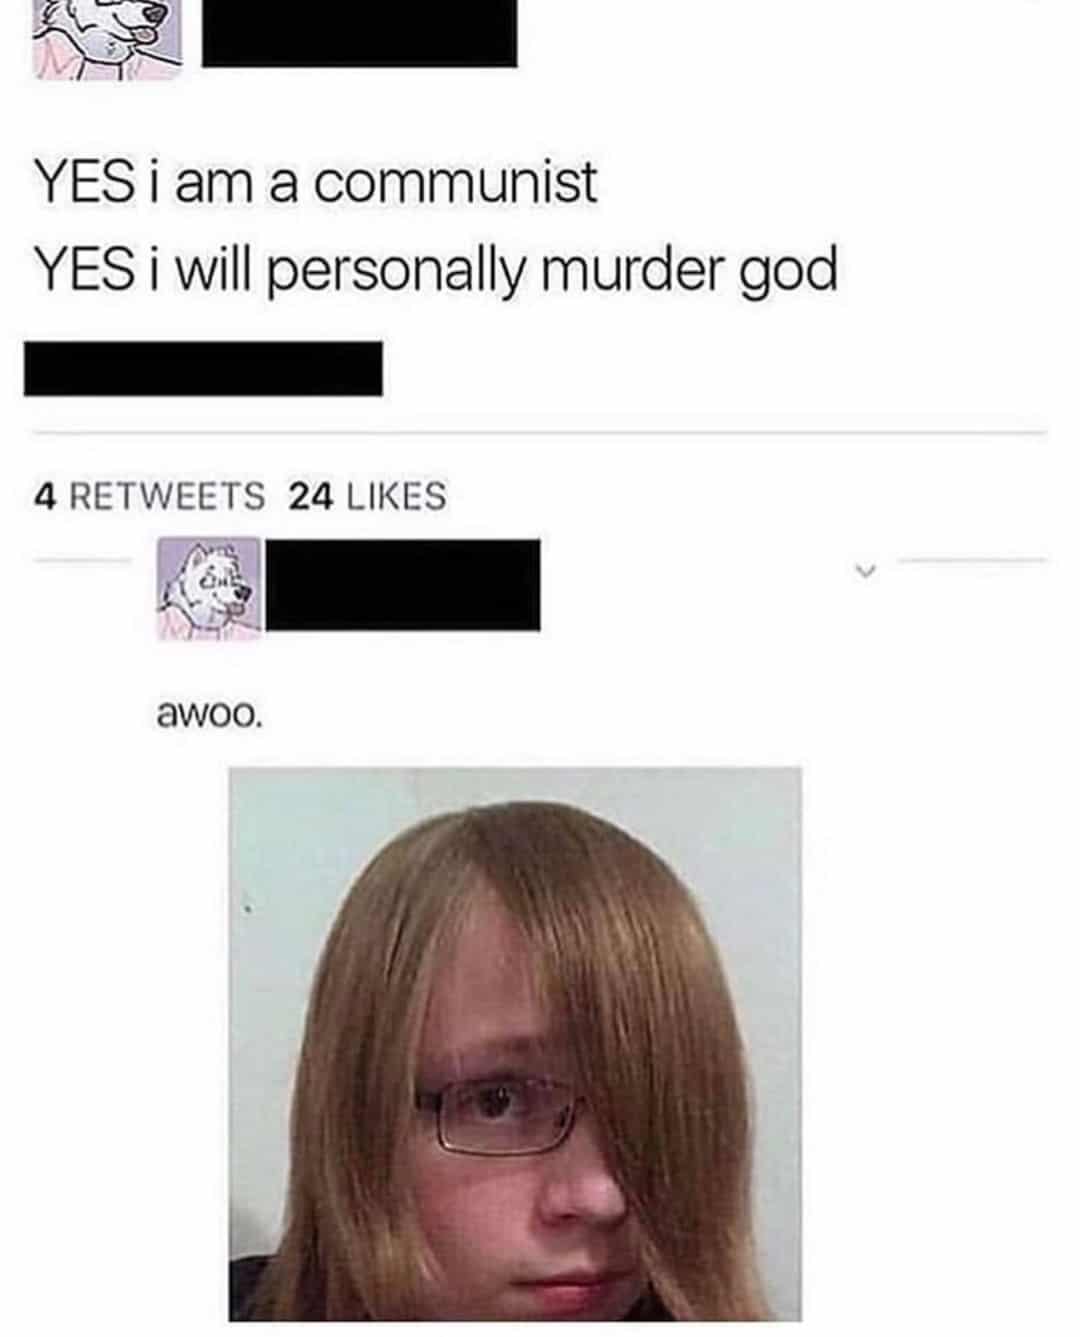 Cringe, London cringe memes Cringe, London text: YES i am a communist YES i will personally murder god 4 RETWEETS 24 LIKES awoo. 